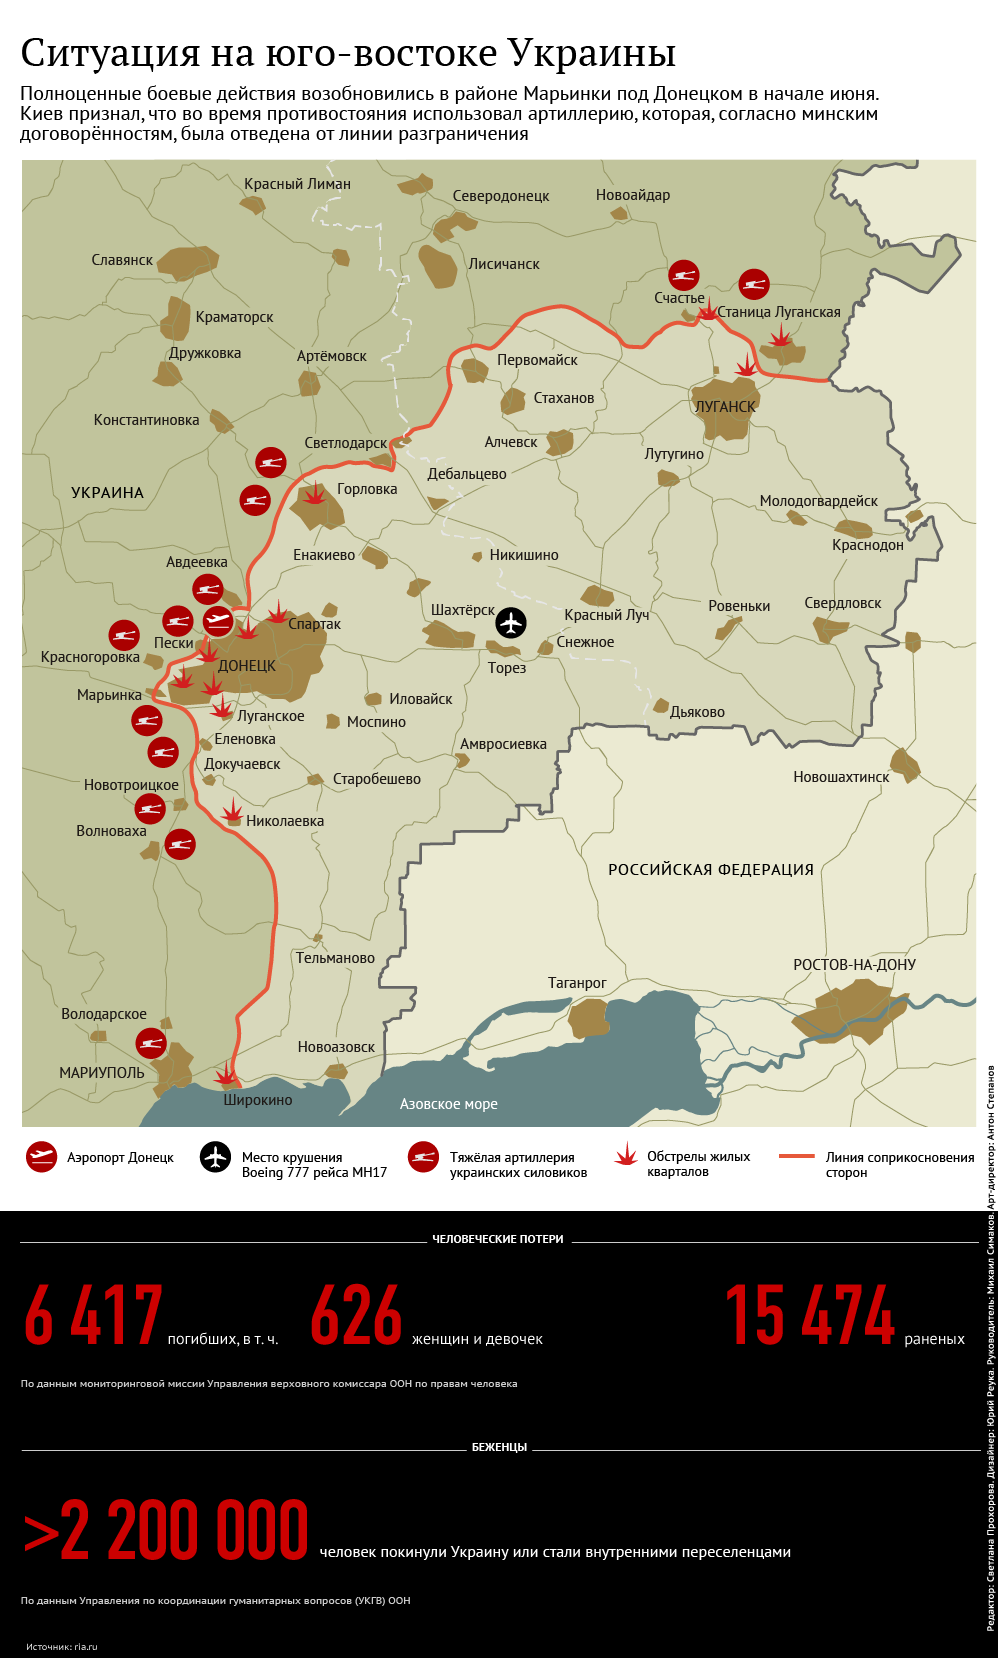 Ситуация на юго-востоке Украины июнь 2015